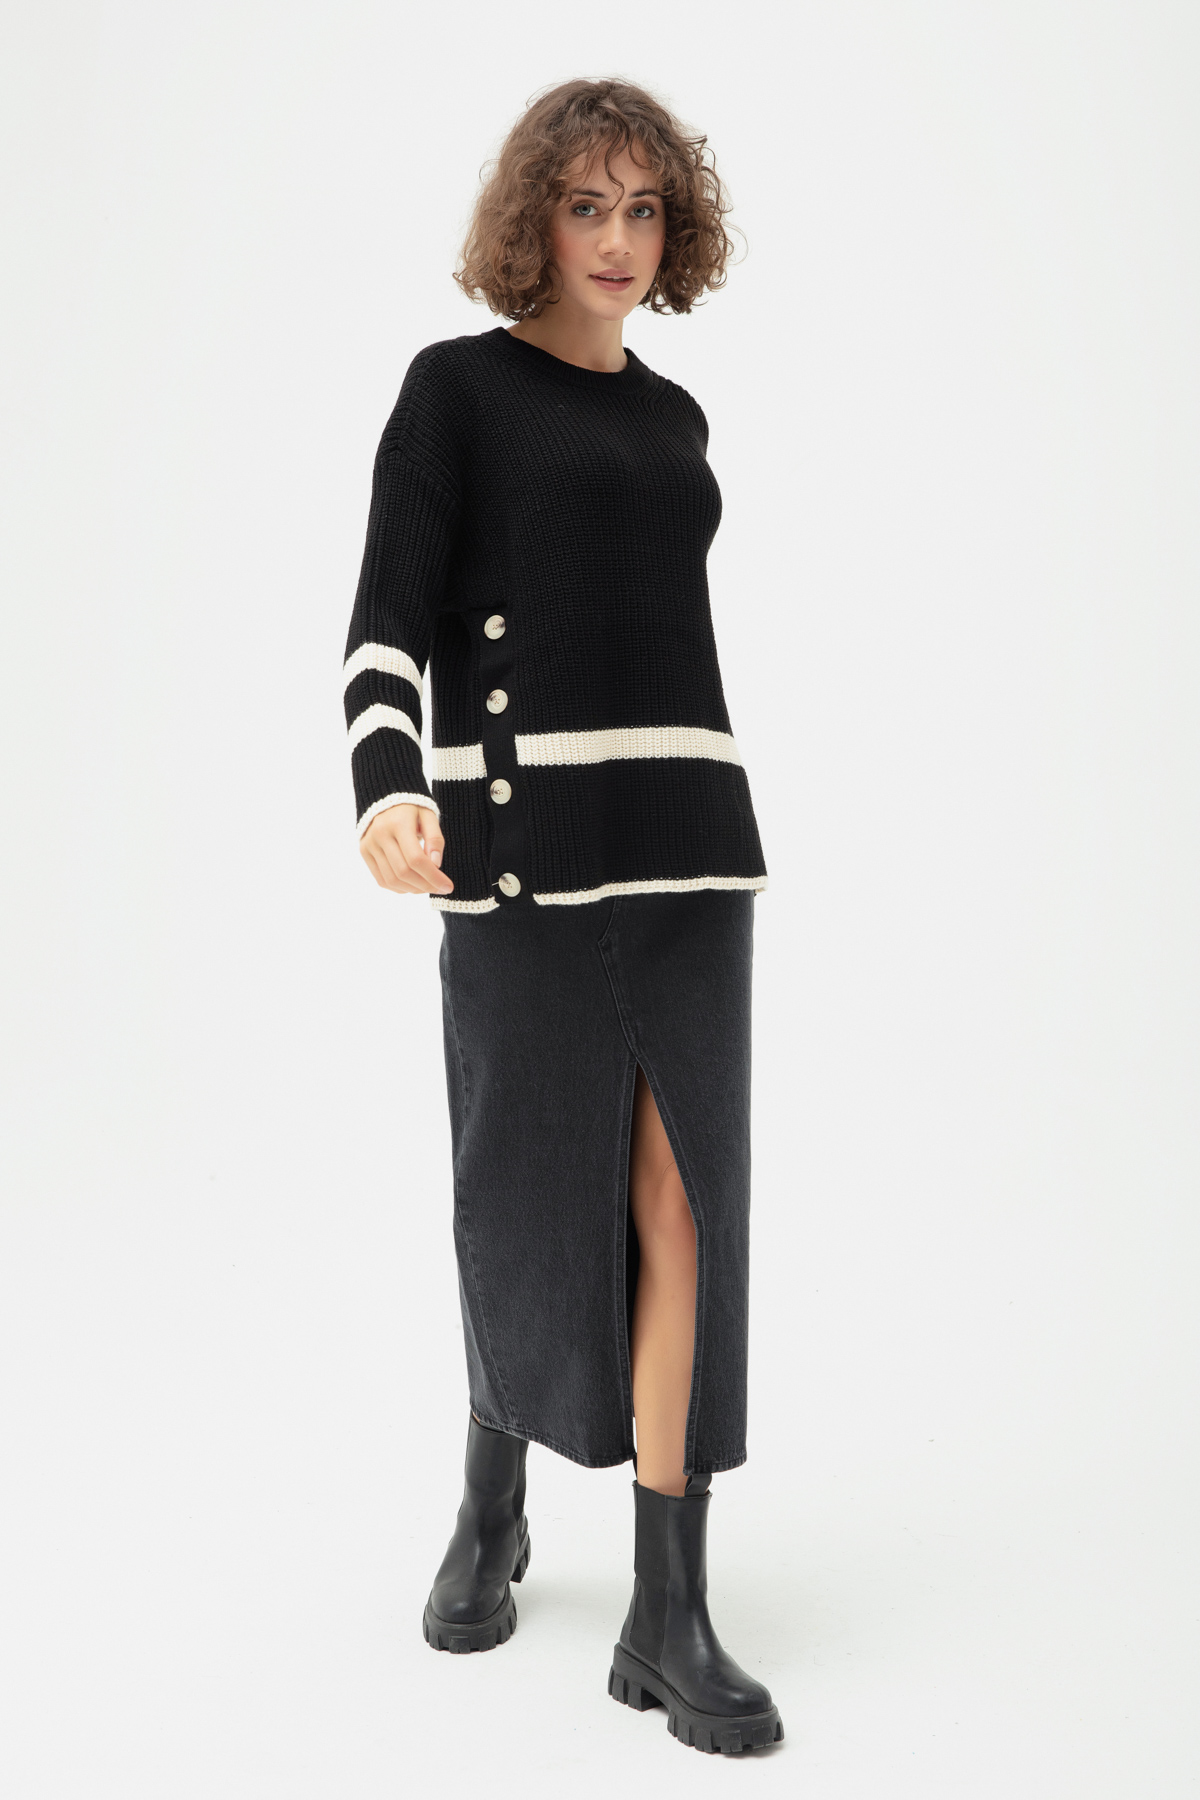 Women's Black Buttoned Knitwear Sweater